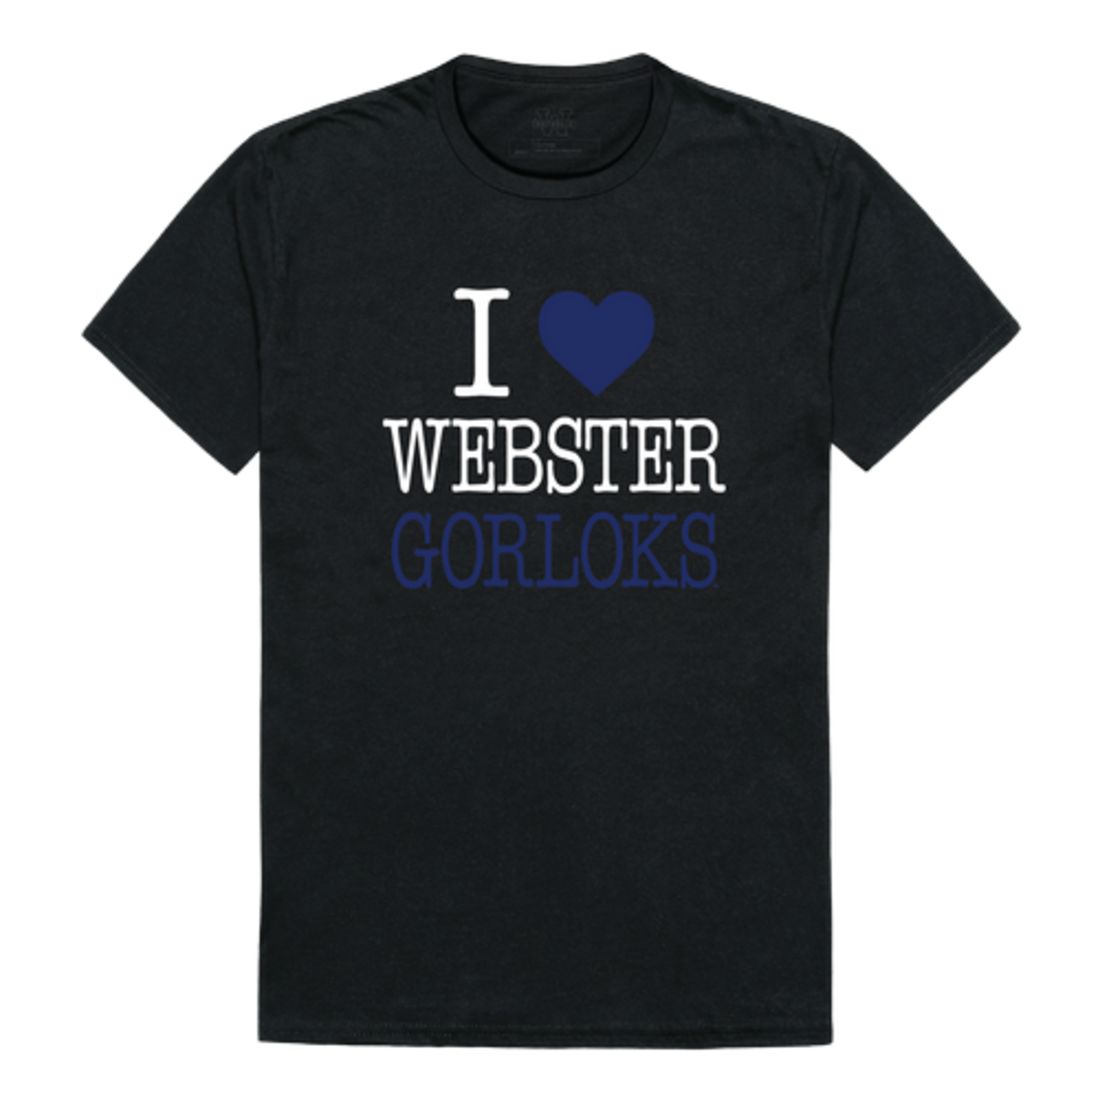 I Love Webster University Gorlocks T-Shirt Tee